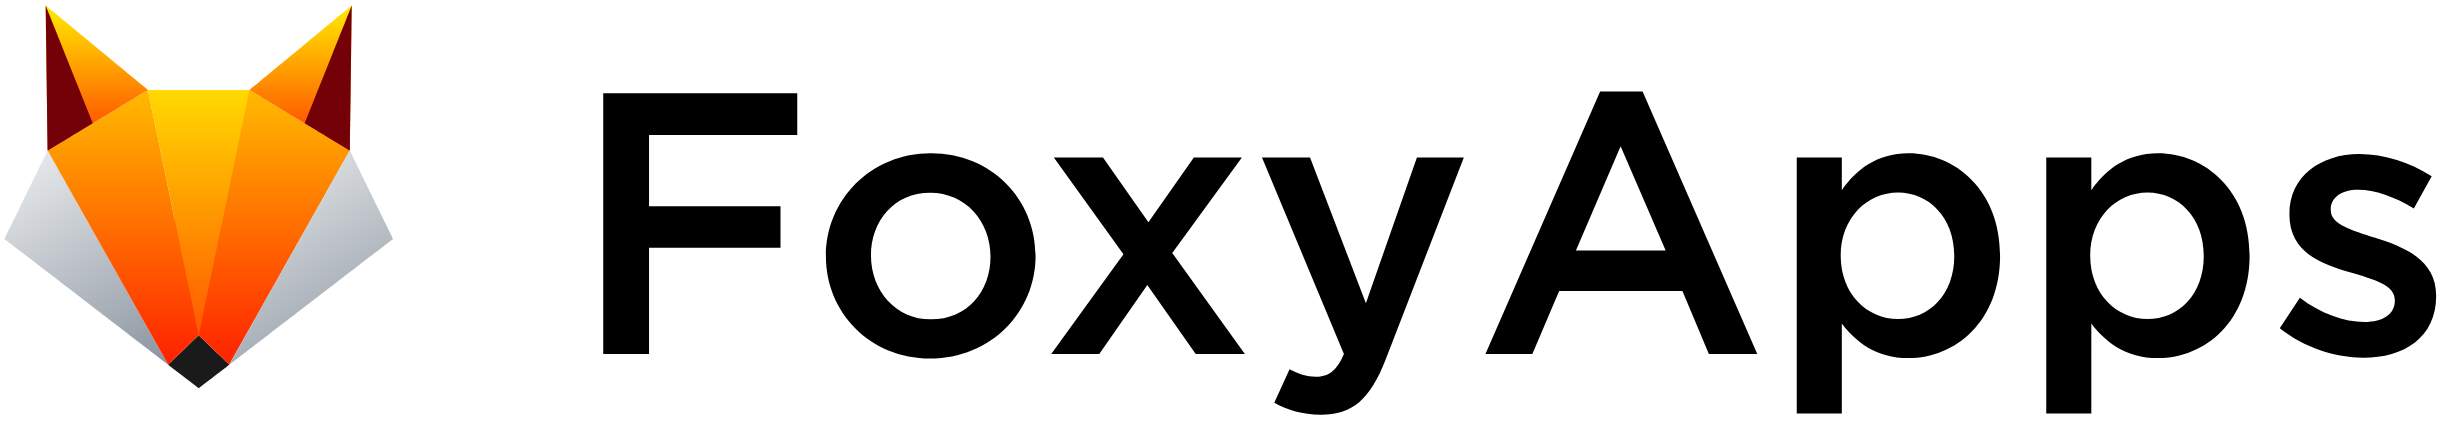 Foxyapps logo (1)